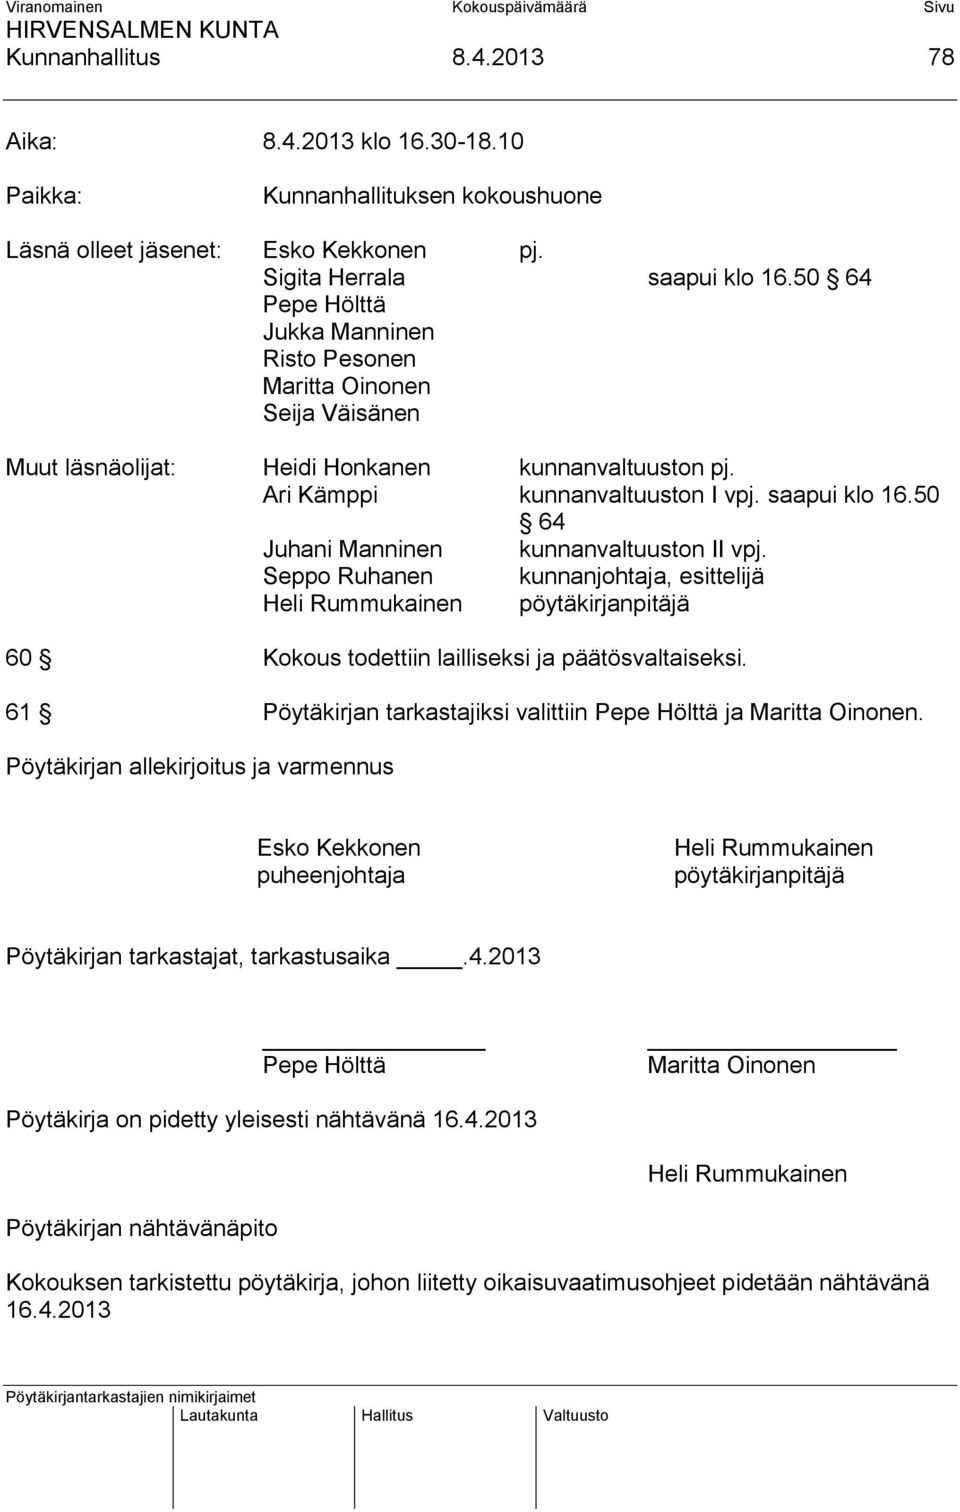 50 64 Juhani Manninen kunnanvaltuuston II vpj. Seppo Ruhanen kunnanjohtaja, esittelijä Heli Rummukainen pöytäkirjanpitäjä 60 Kokous todettiin lailliseksi ja päätösvaltaiseksi.